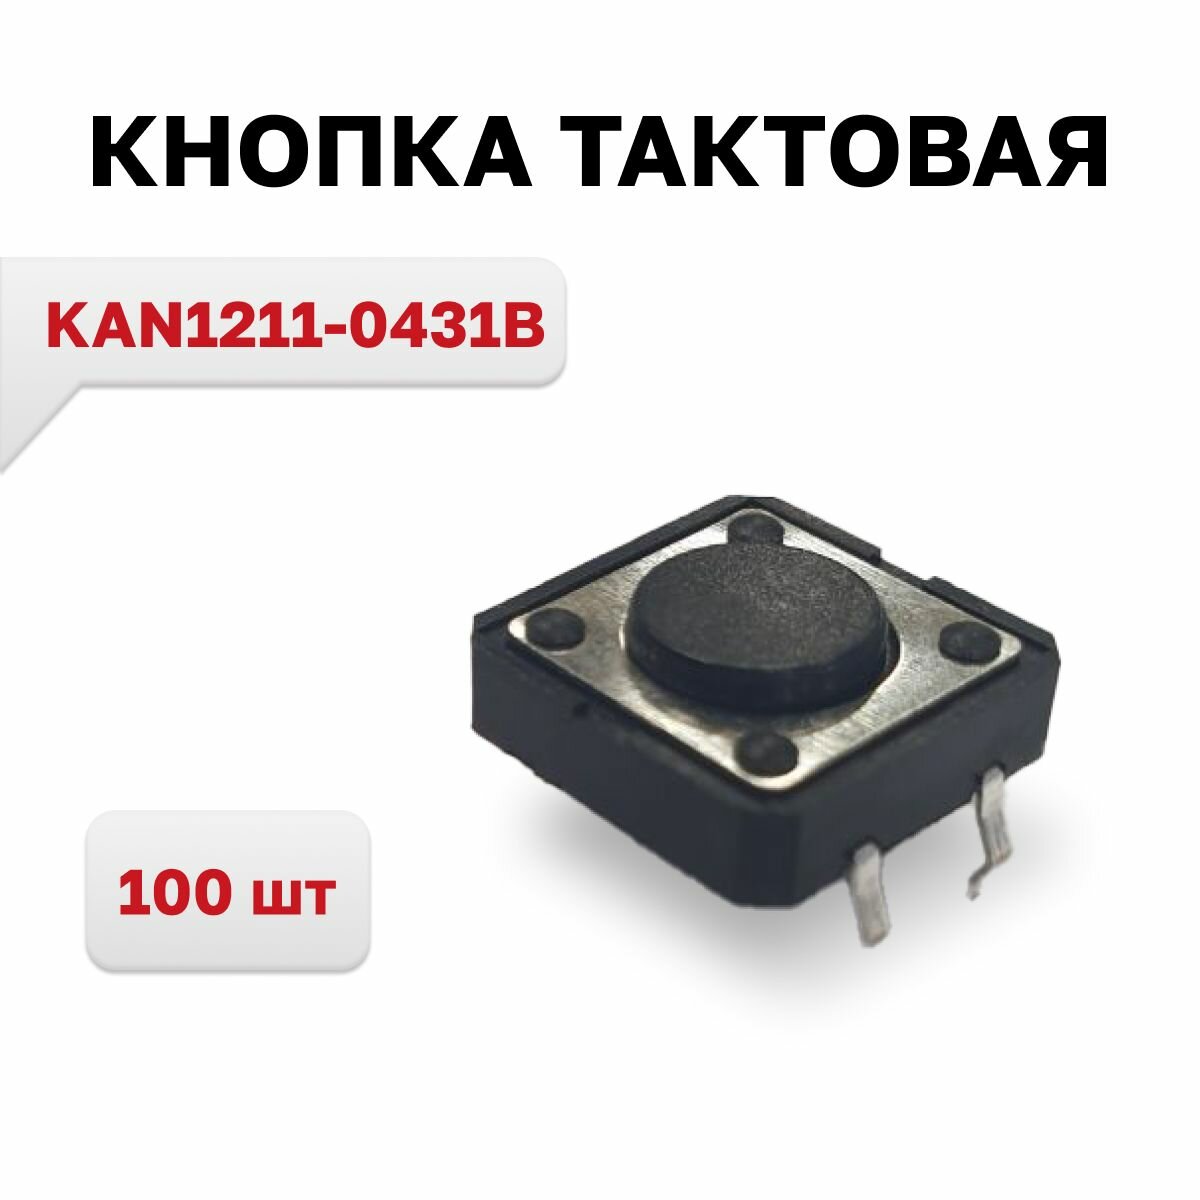 KAN1211-0431B кнопка тактовая 100 шт.